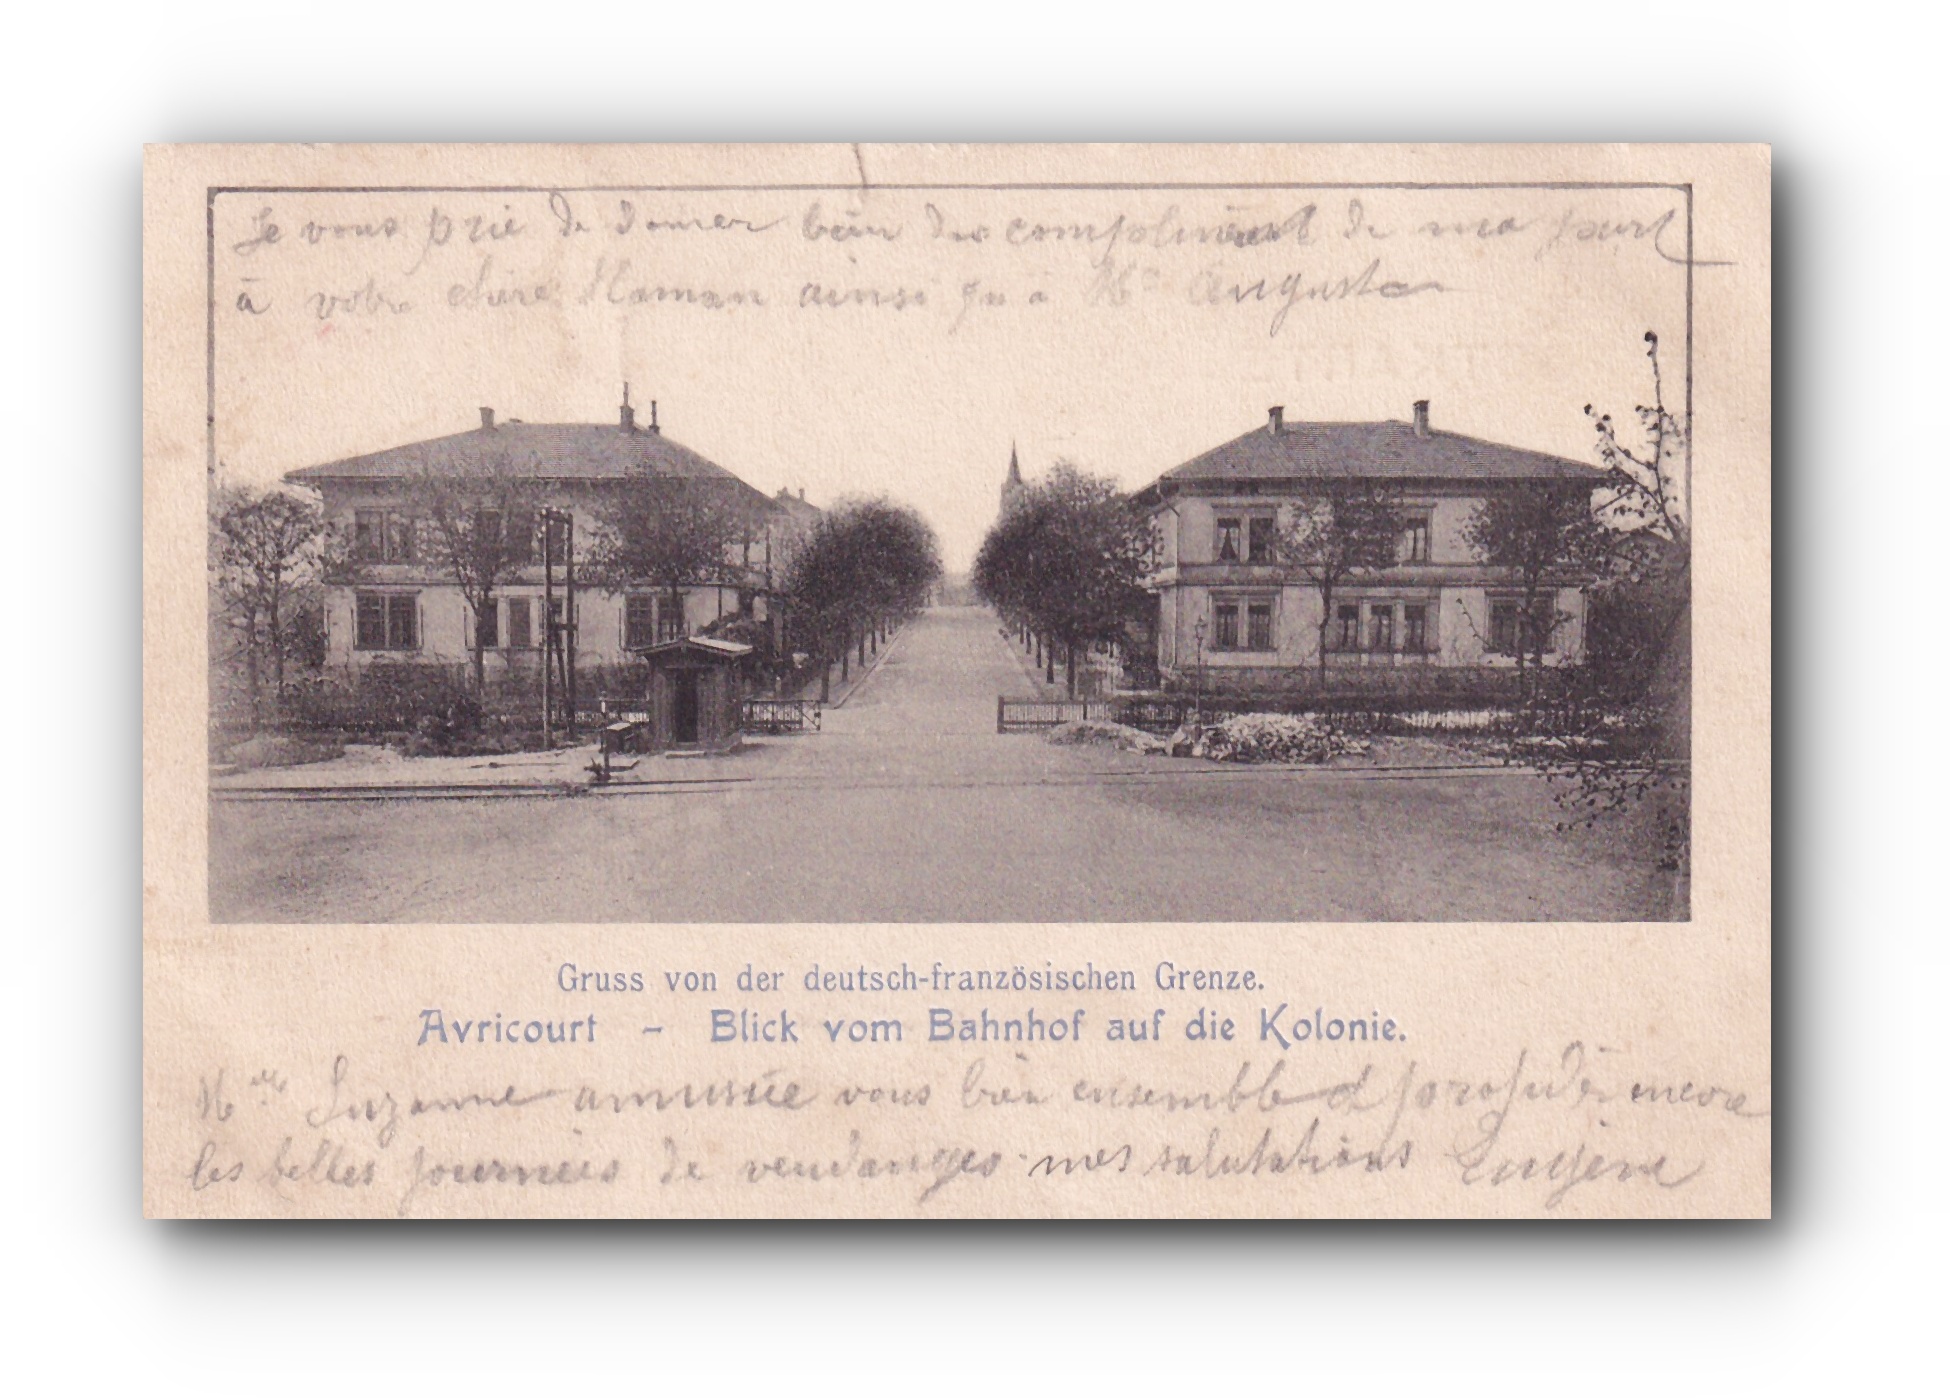 - Blick vom Bahnhof auf die Kolonie - AVRICOURT - 24.09.1902 -